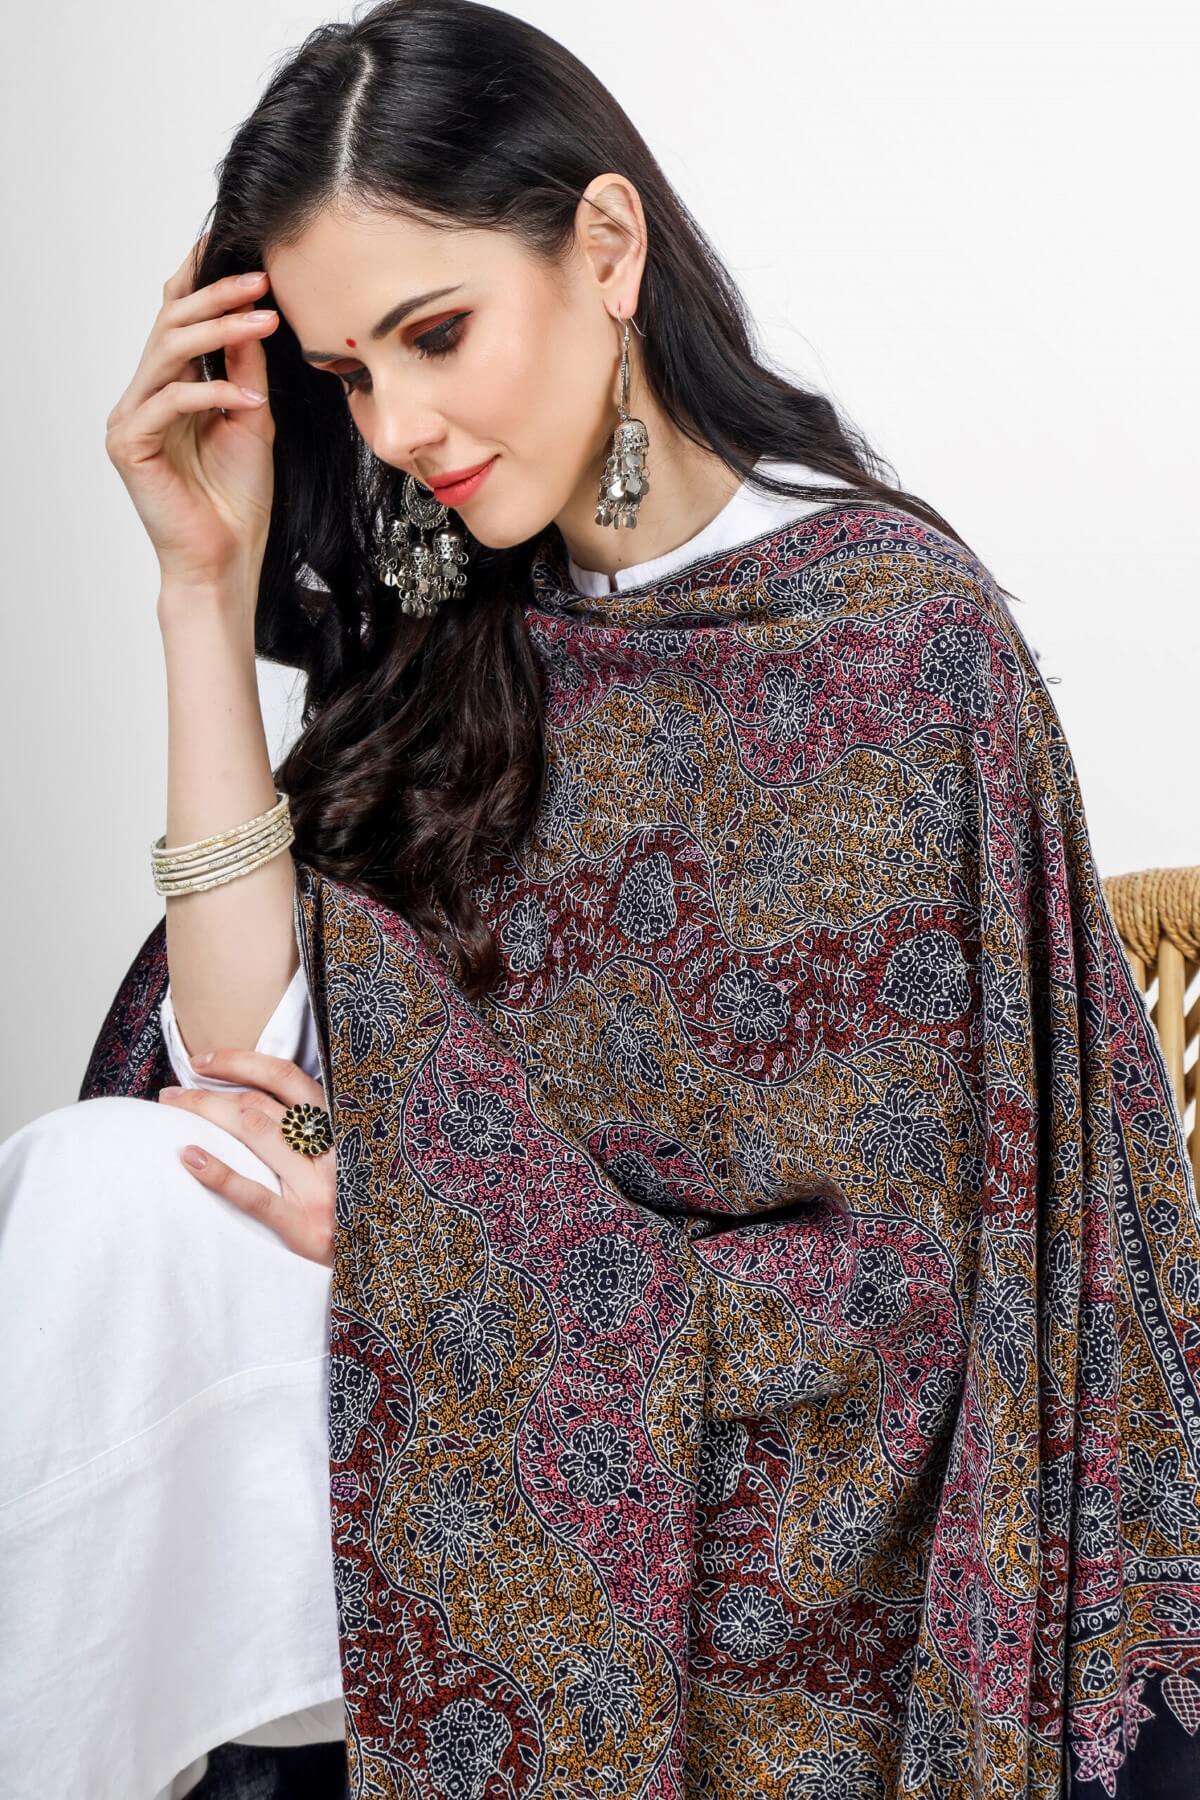 Black Pashmina sozni Tot -jama shawl , "PASHMINA SHAWL - Unmatched Softness and Grace" "PASHMINA SHAWLS IN MUMBAI - Indian Tradition and Luxury" "PASHMINA SHAWLS IN BEIJING - Chinese Elegance and Comfort" "KEPRA PASHMINA SHAWLS - Elegance Redefined"